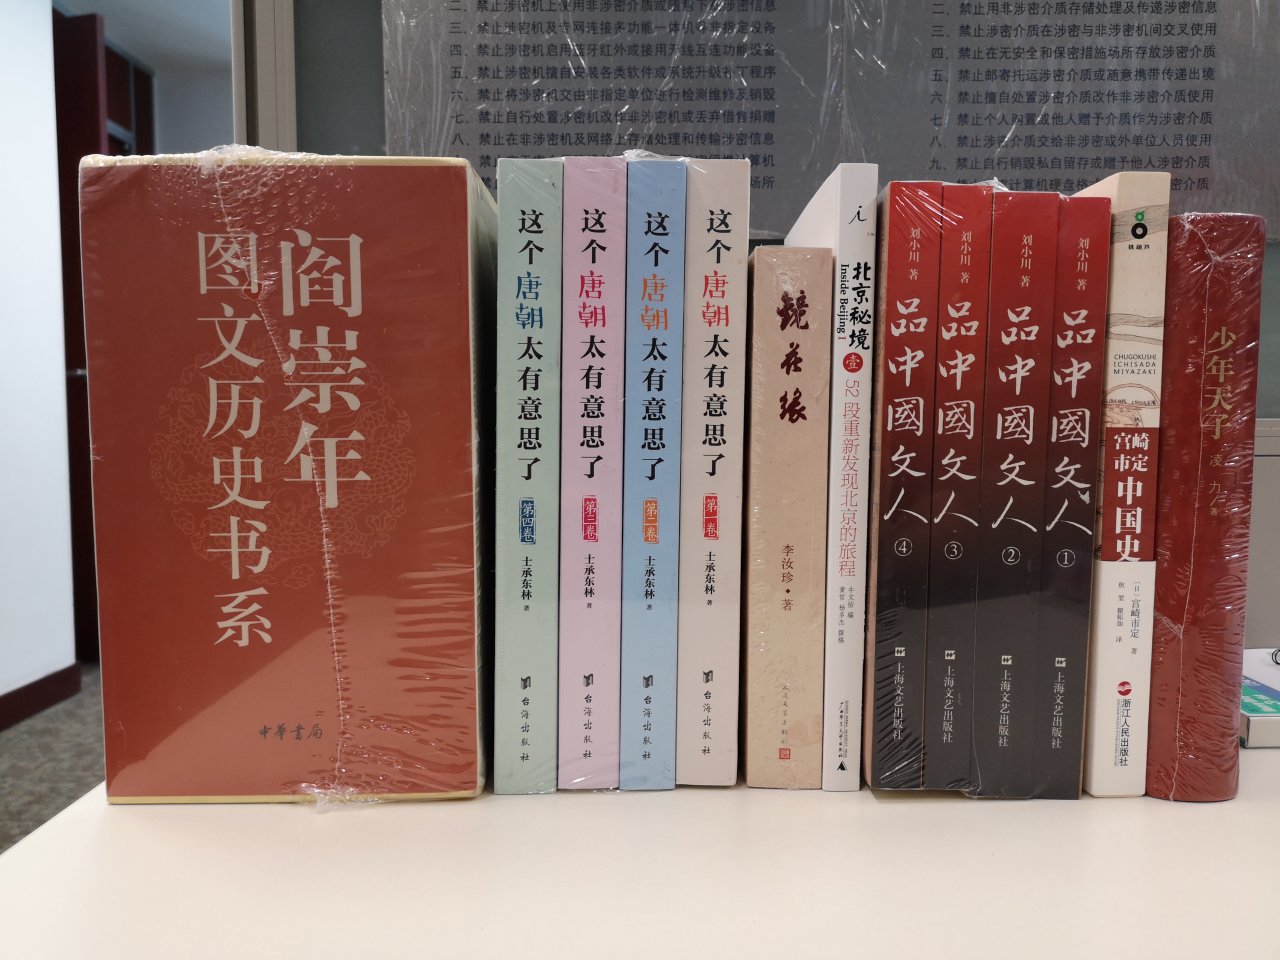 书很厚实，塑膜完整，字体大小合适，内容海量，要慢慢的看。中国文人不同时代有不同的特点，期待能更多的了解这个阶层。